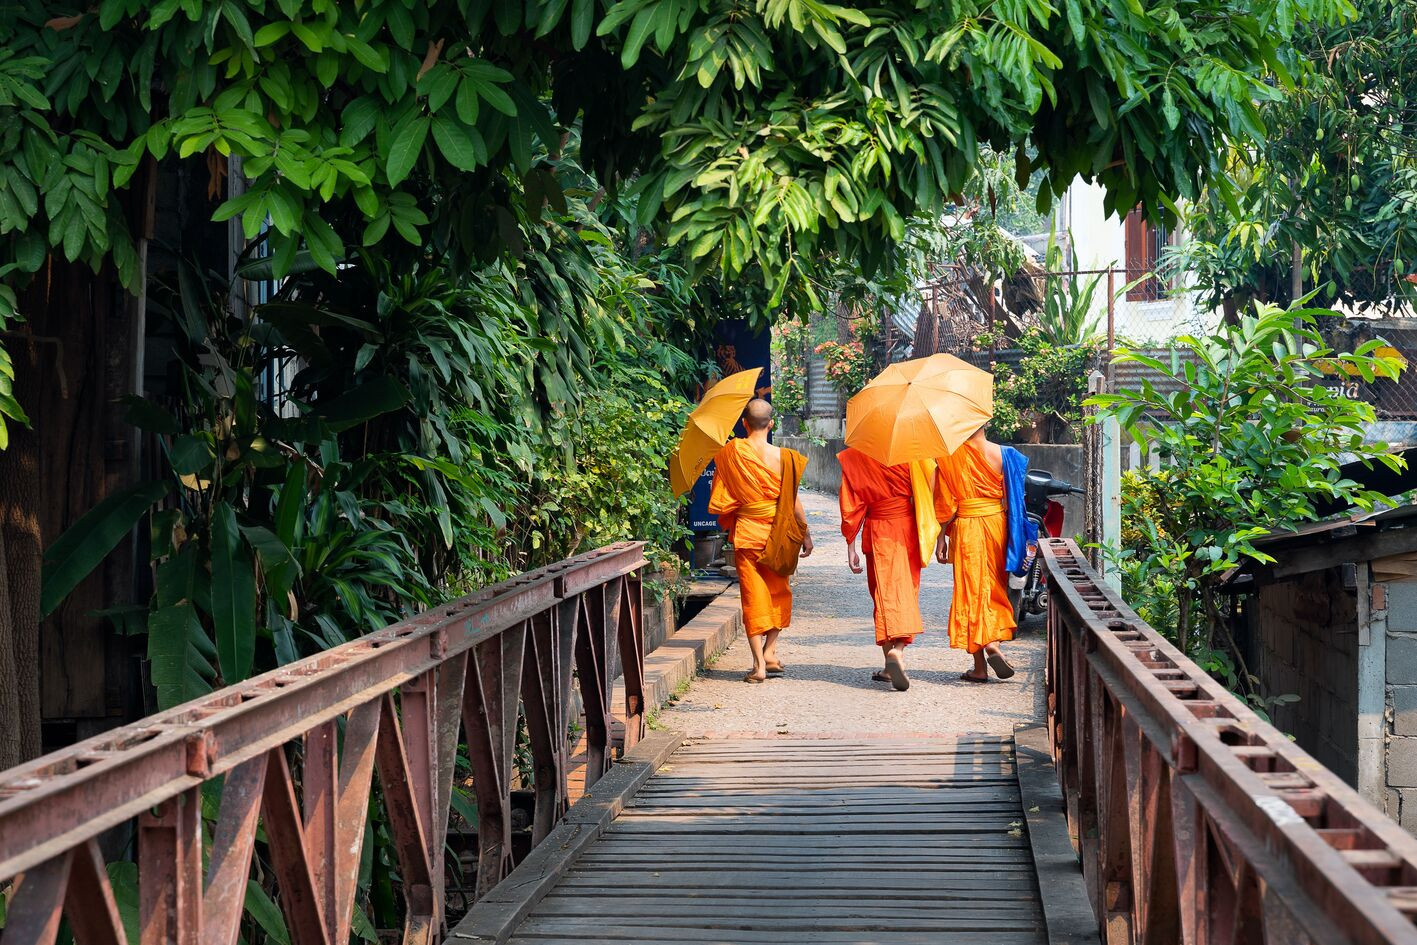 Monikken wandelend in Laos